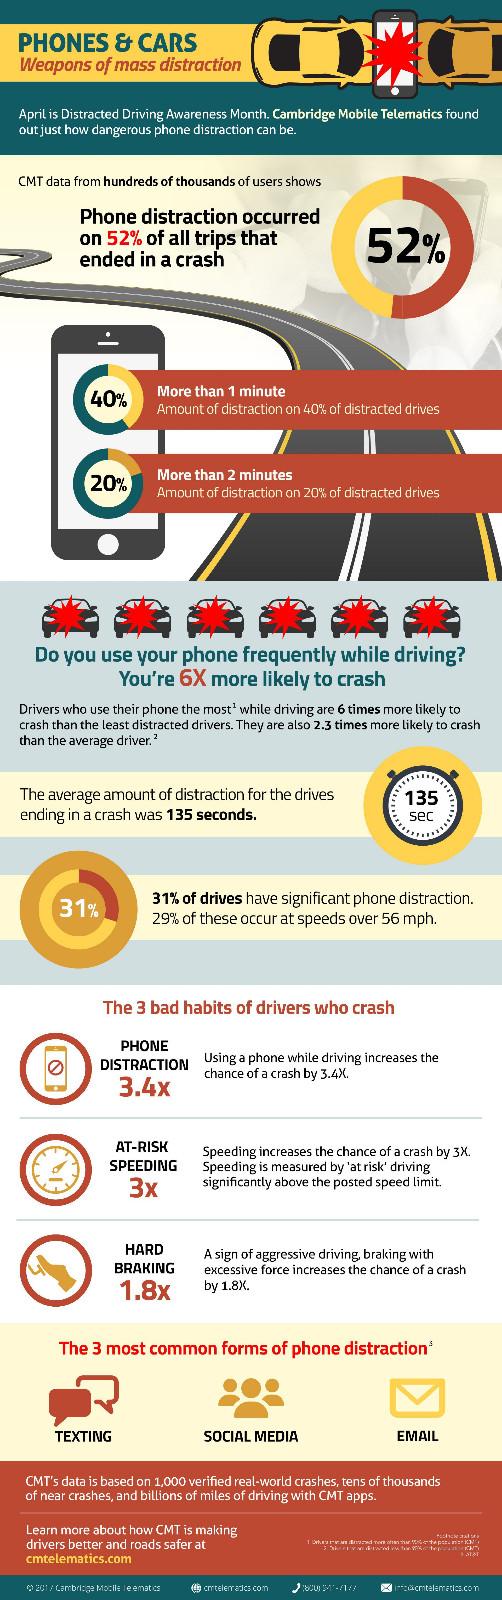 研究发现开车时使用手机能导致车祸 也能拯救司机